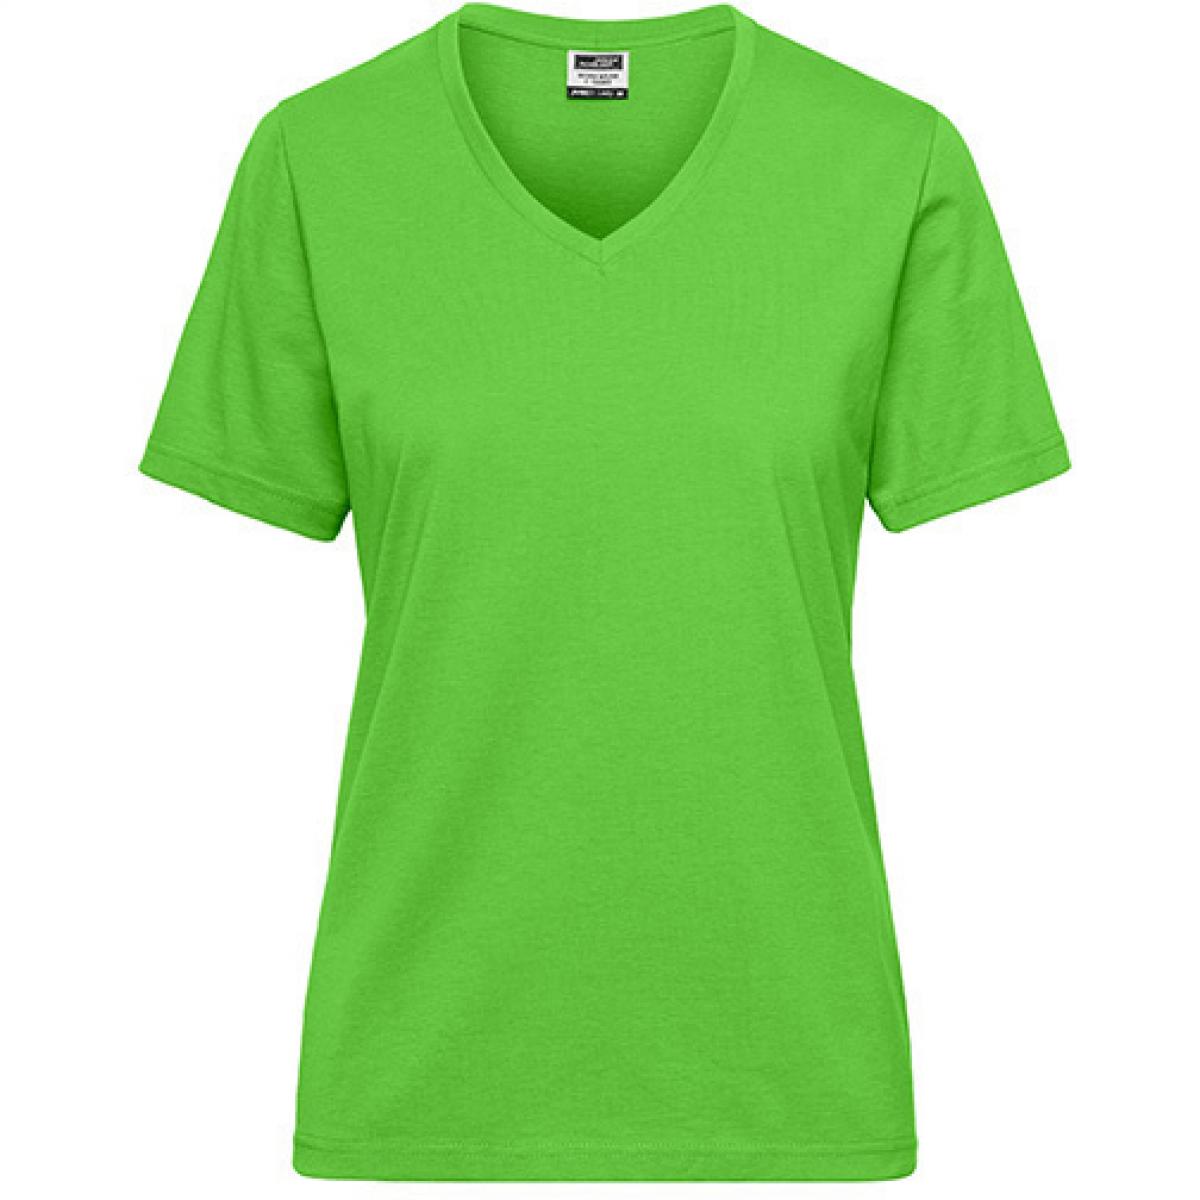 Hersteller: James+Nicholson Herstellernummer: JN1807 Artikelbezeichnung: Ladies‘ BIO Workwear T-Shirt / Damen T-Shirt - Waschbar 60C Farbe: Lime Green